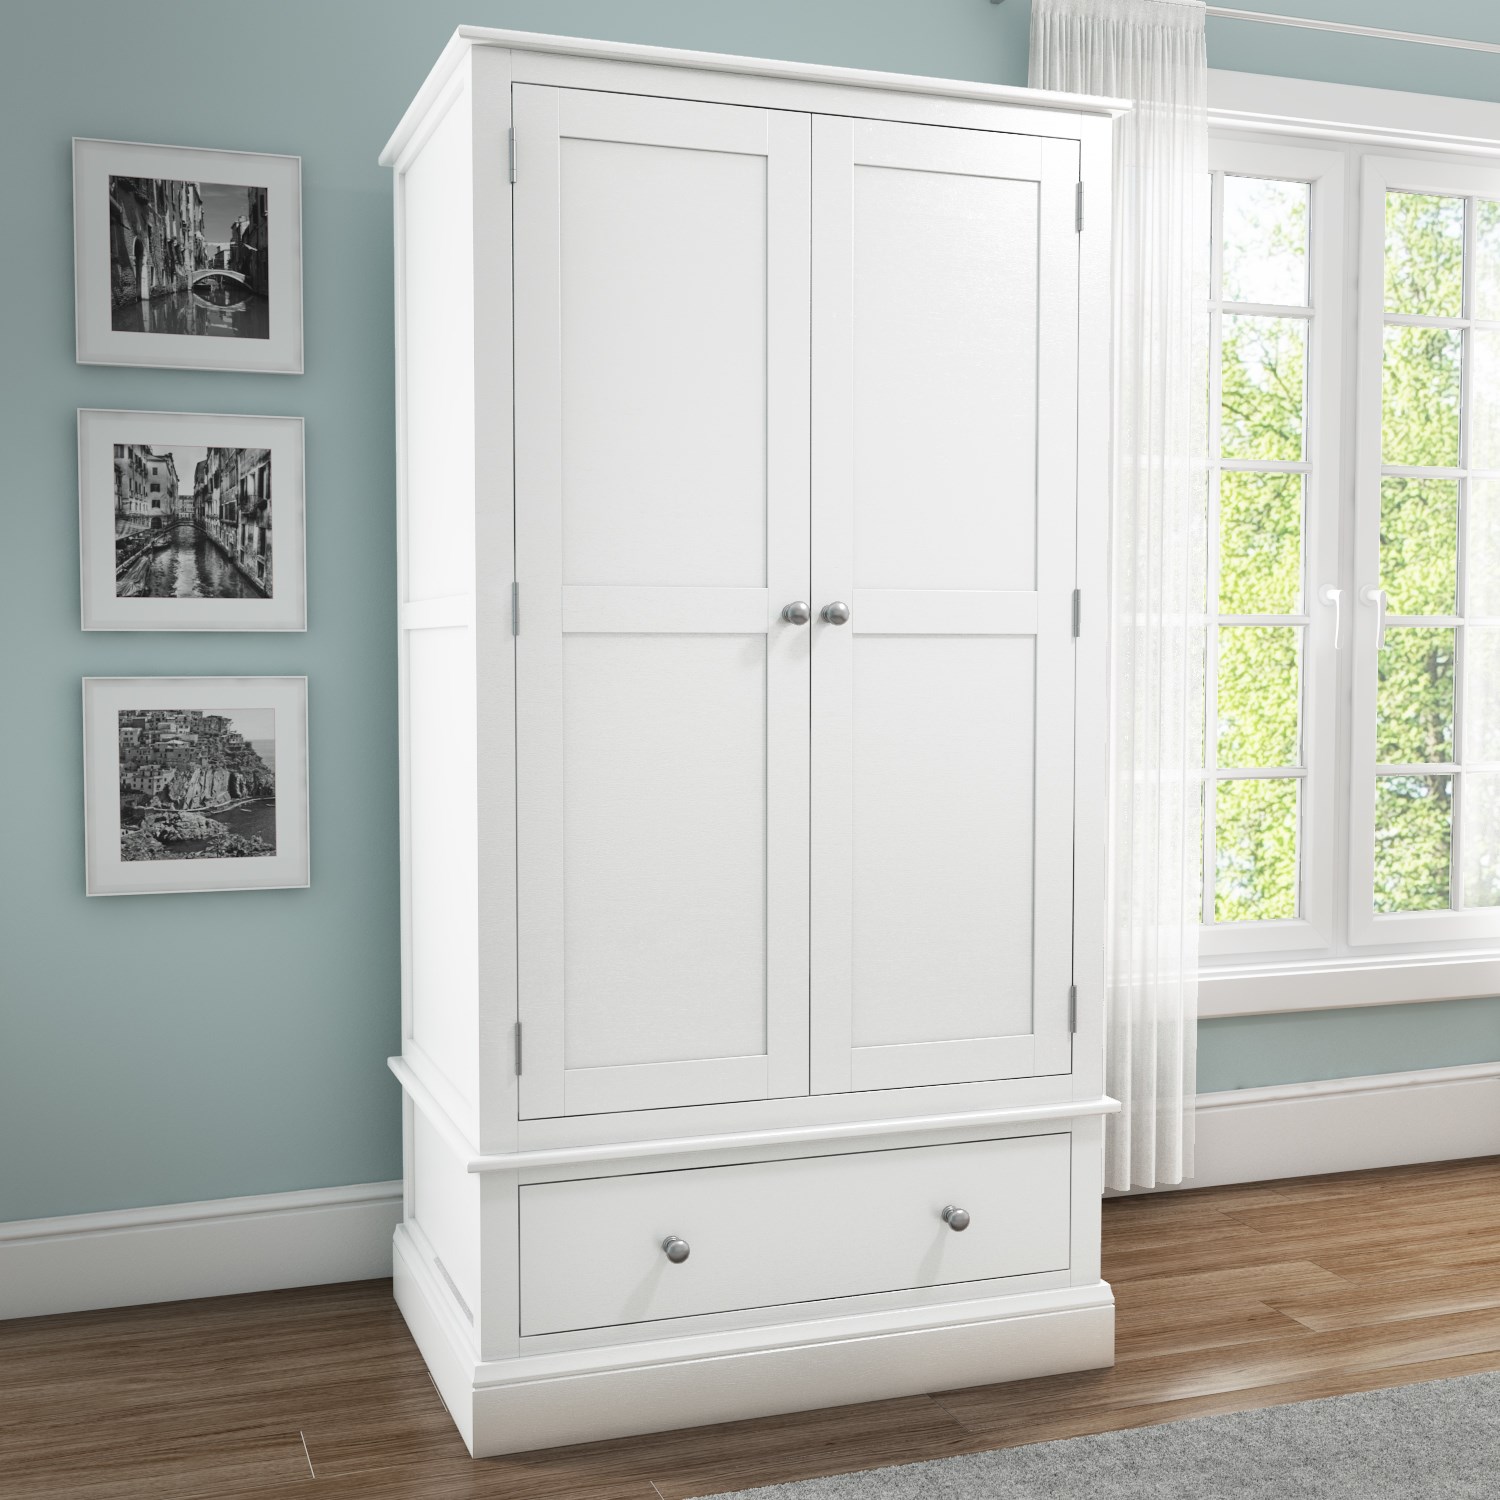 White wardrobes: simple yet beautiful furniture